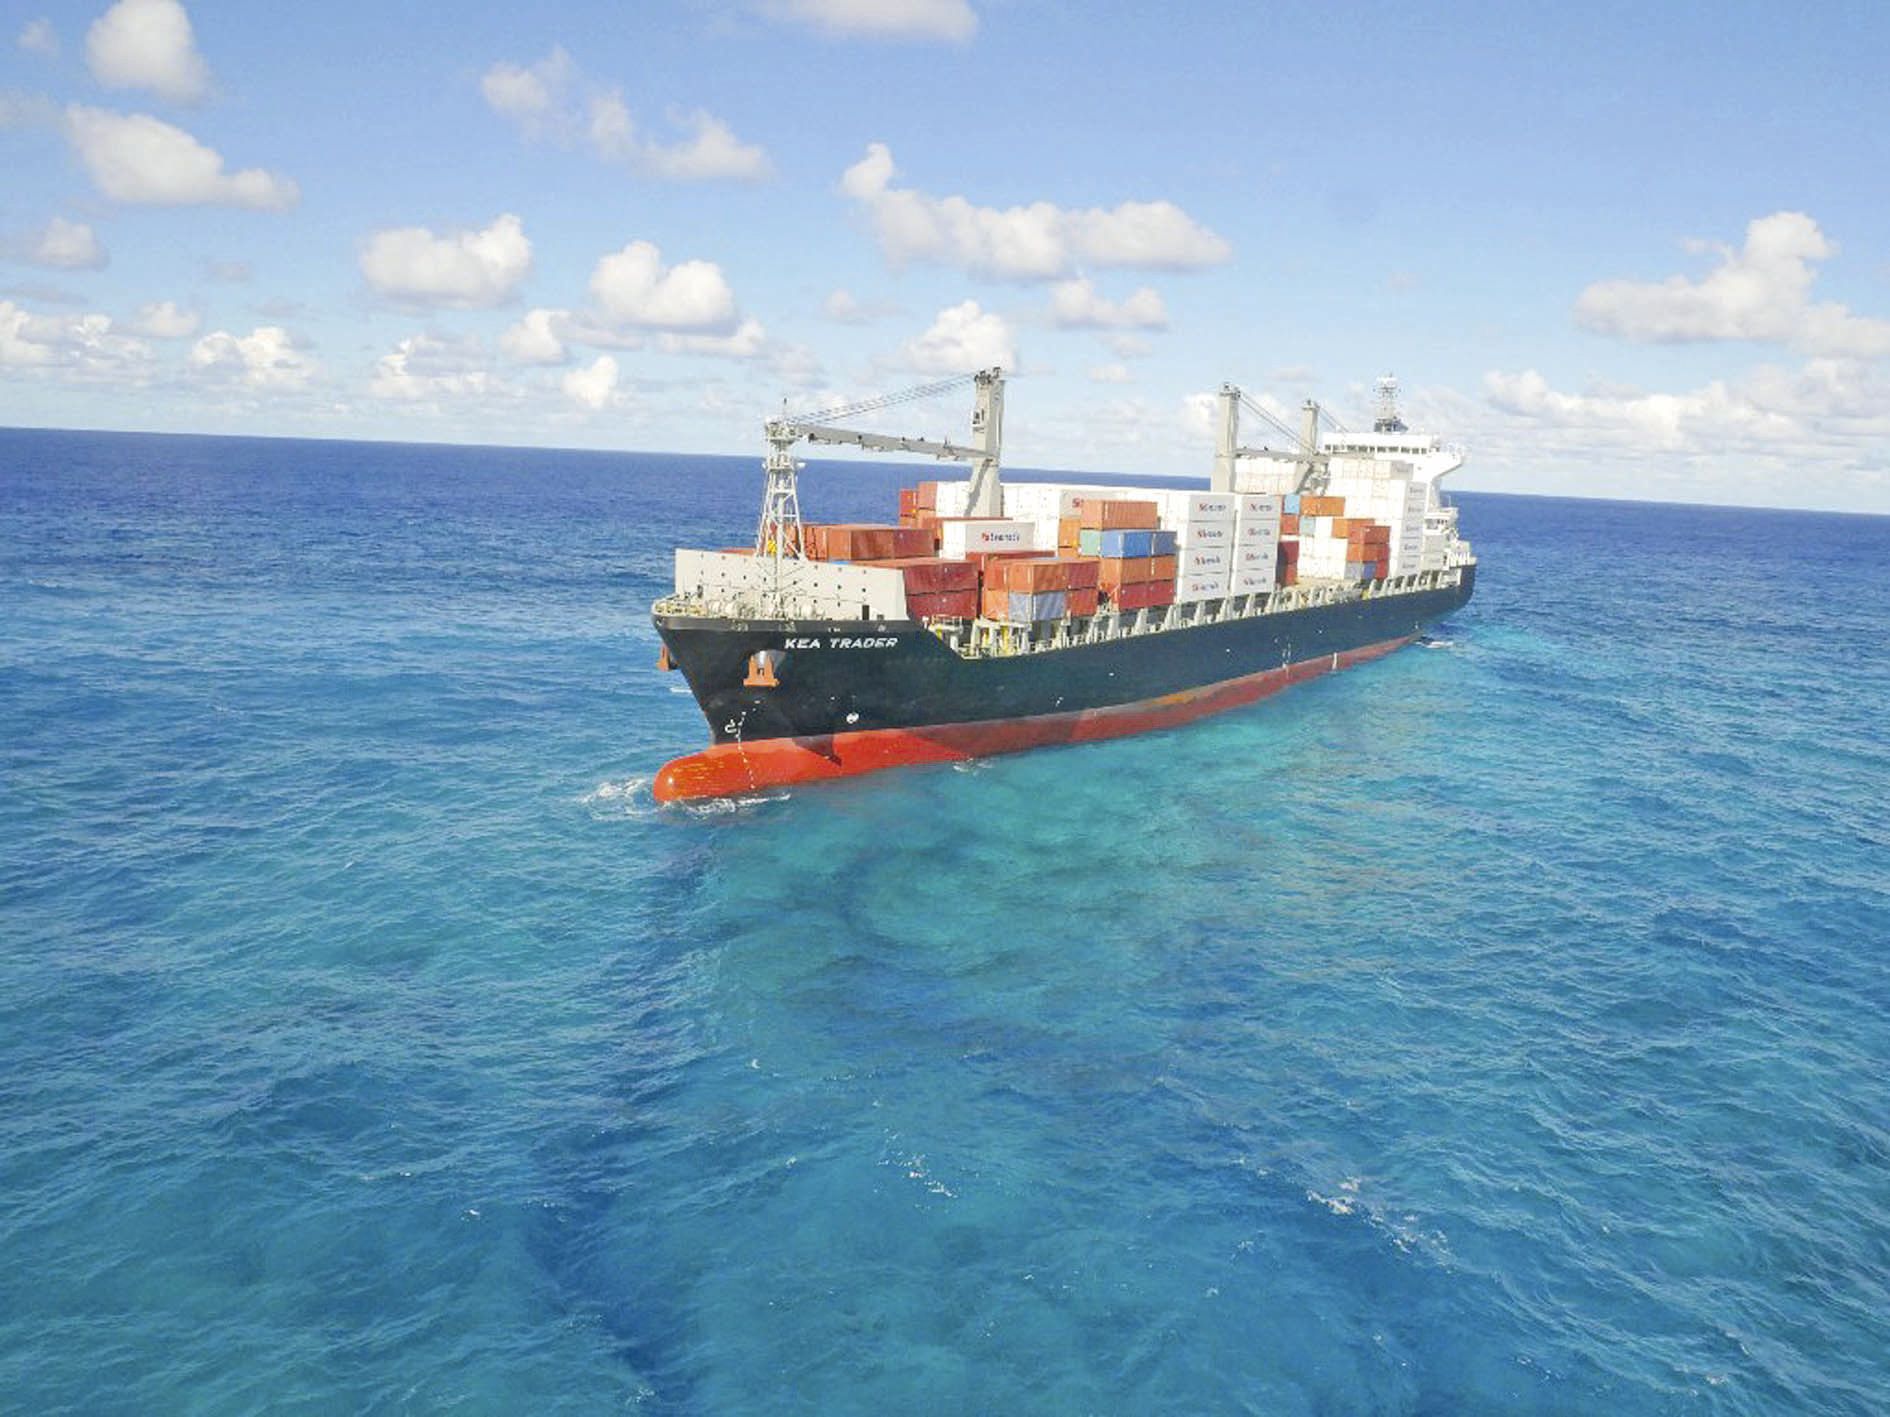 Dès que le niveau de flottaison sera suffisant pour extraire le porte-conteneurs du récif, celui-ci sera remorqué et conduit dans la rade de Nouméa avant d’être remis à son propriétaire, la société Lomar Shipping.